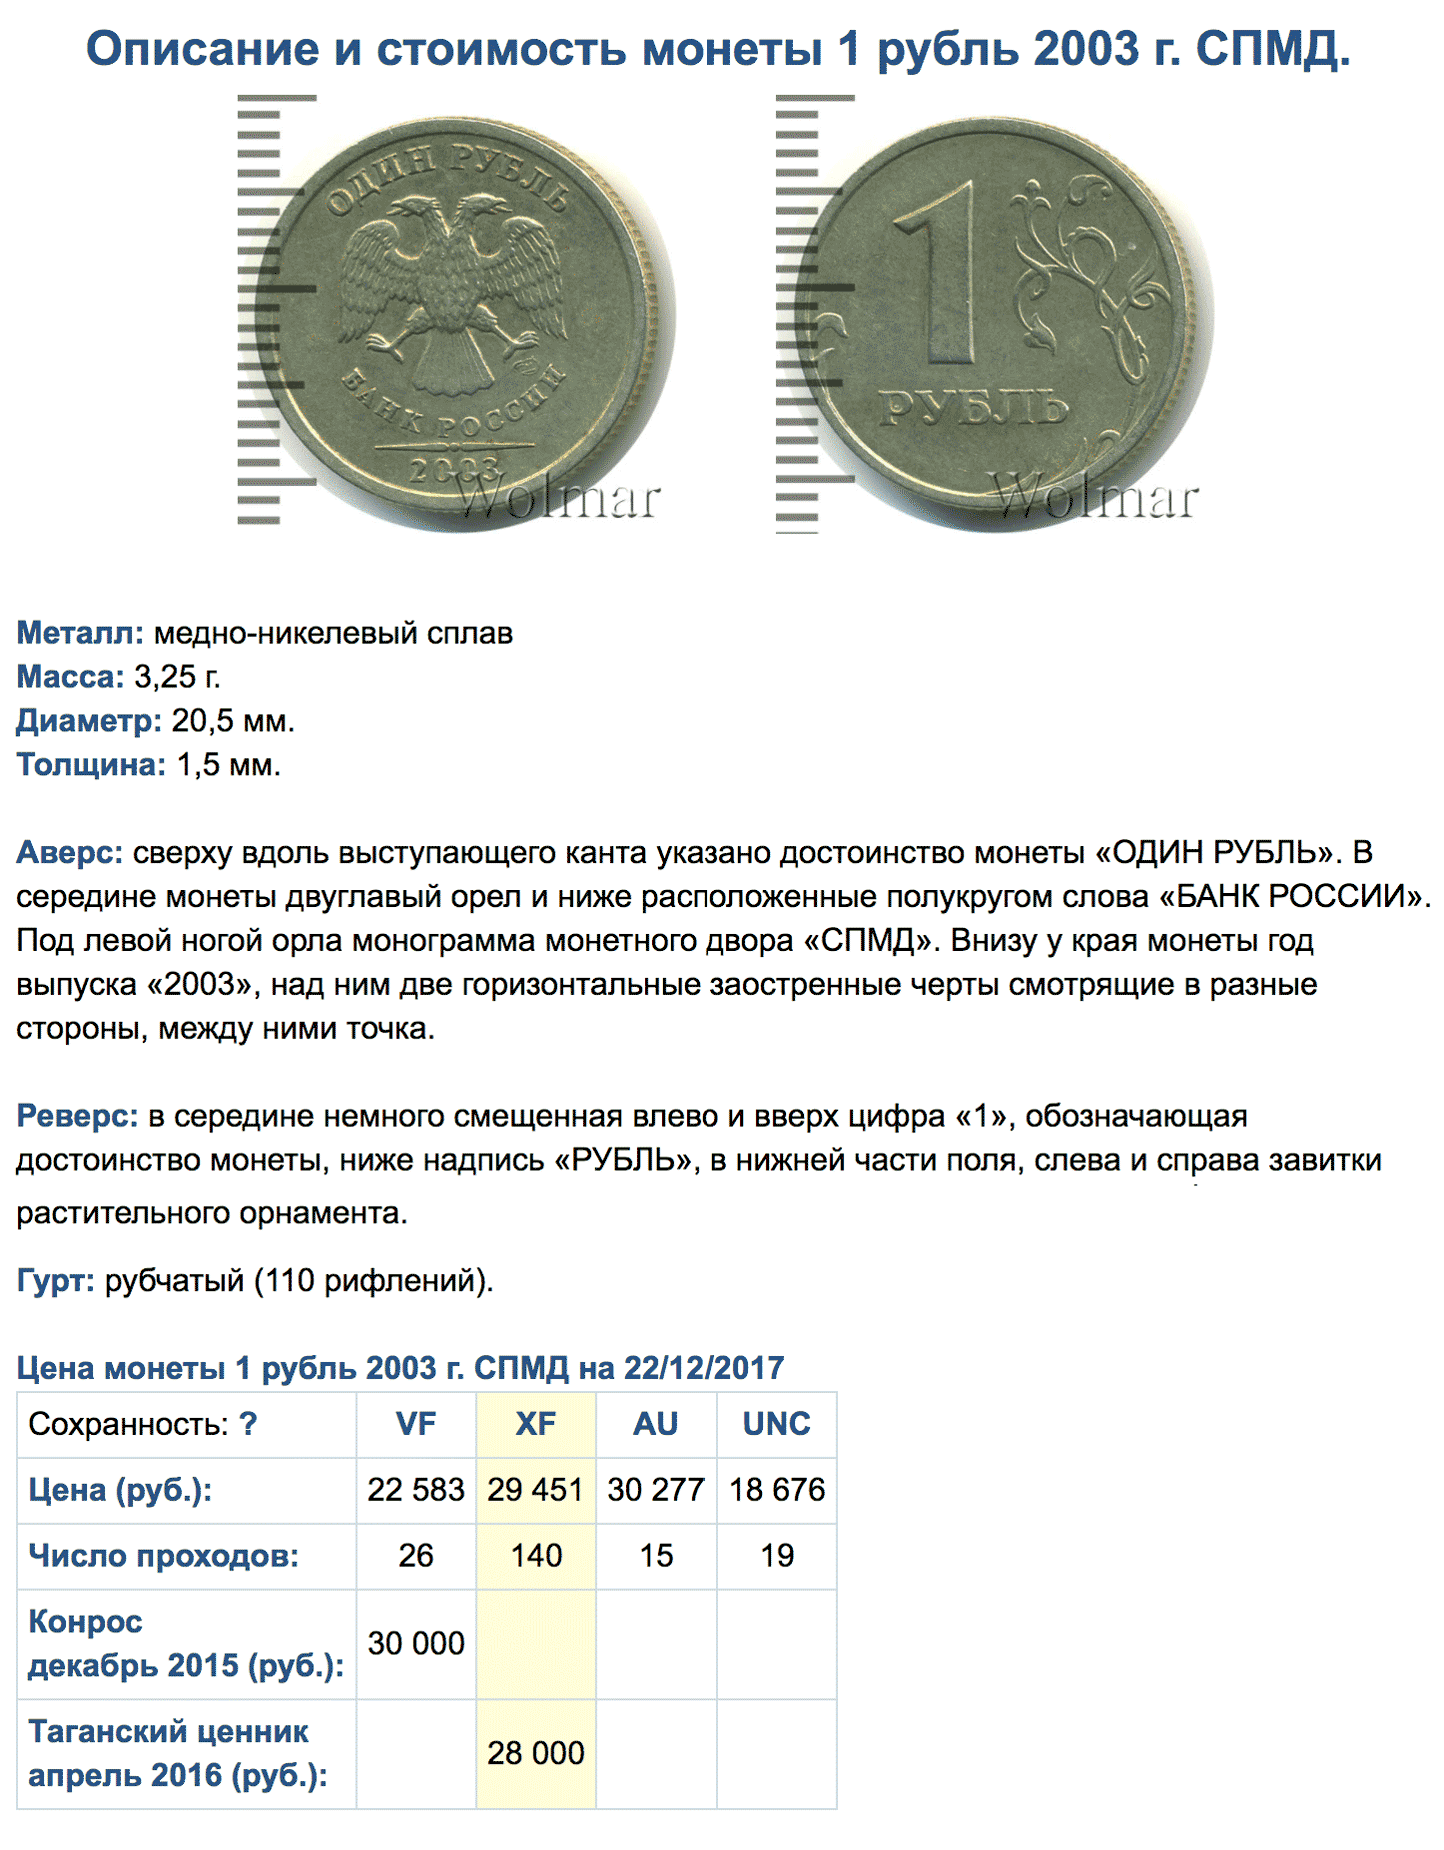 Этот рубль 2003 года чеканки стоит 28 000 рублей